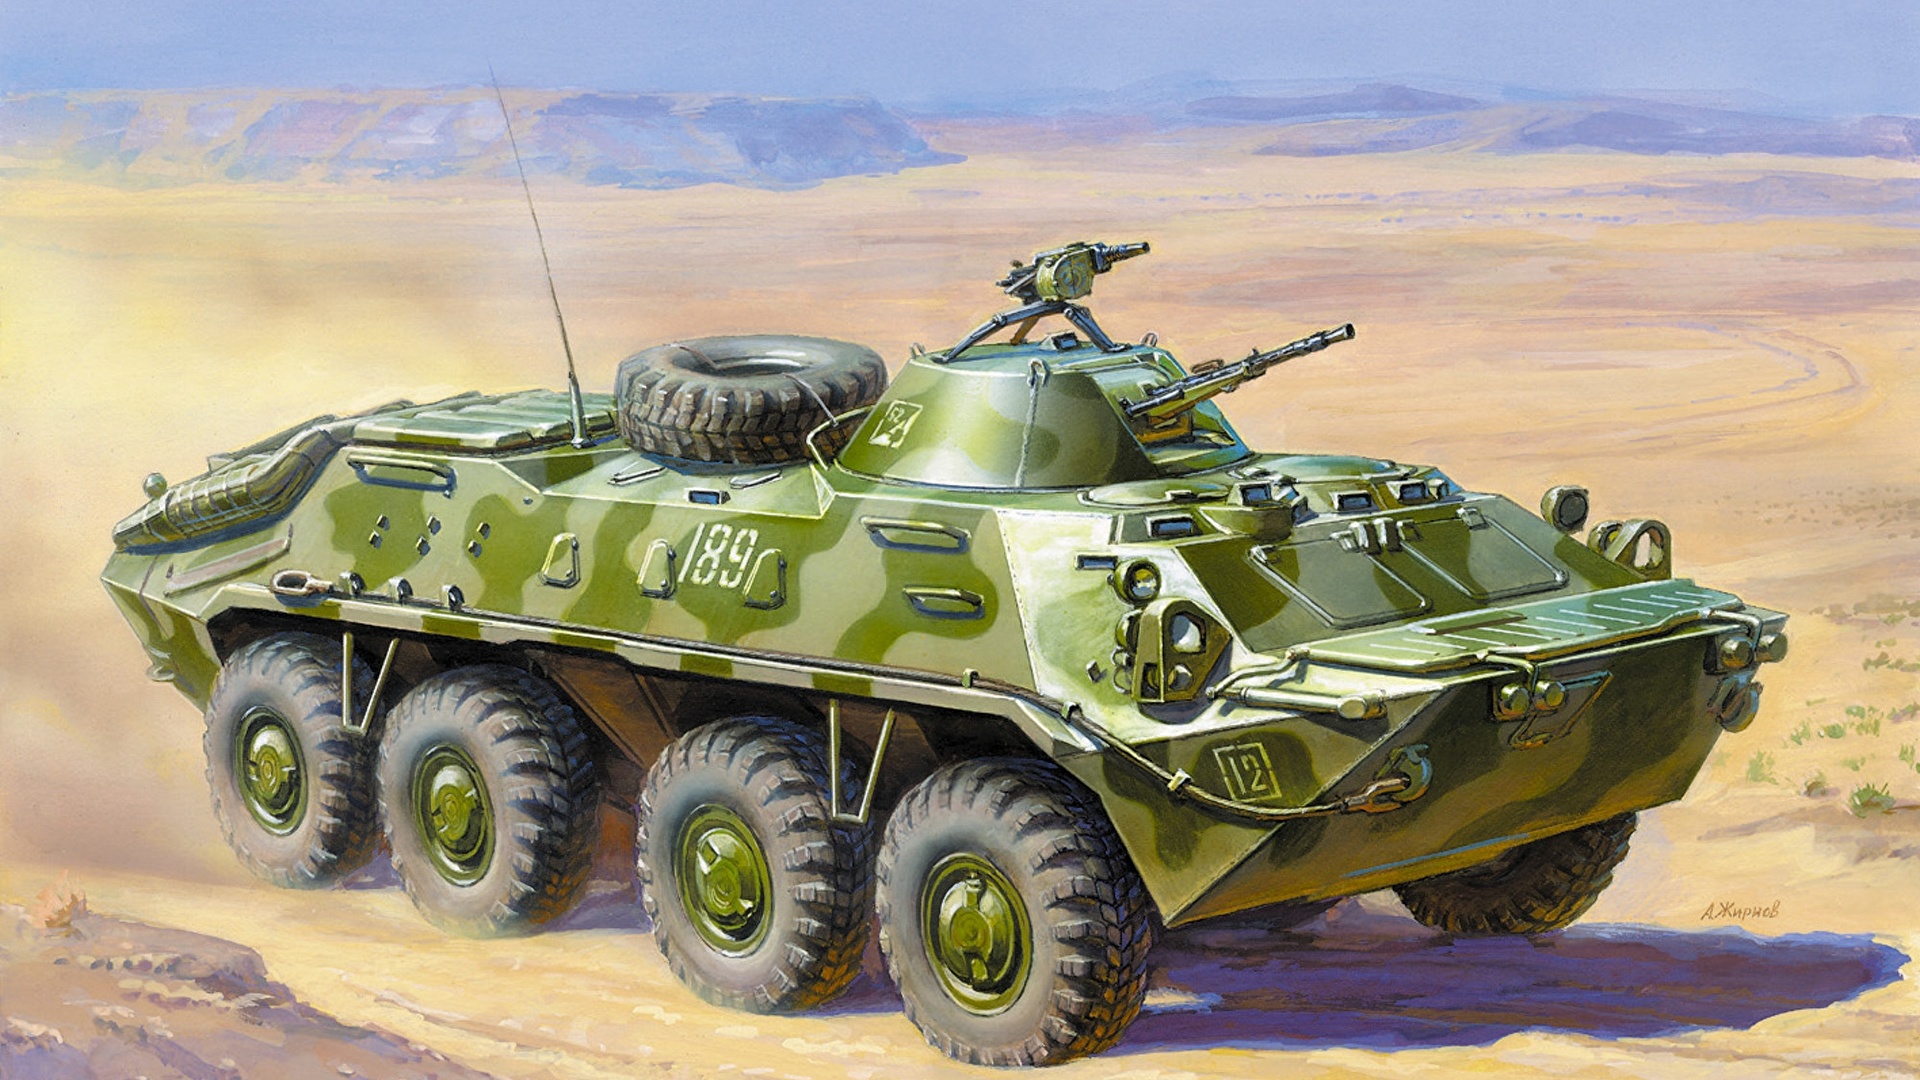 Bakgrunnsbilder PPK BTR-70 Malte Militærvesen 1920x1080 pansret personellkjøretøy